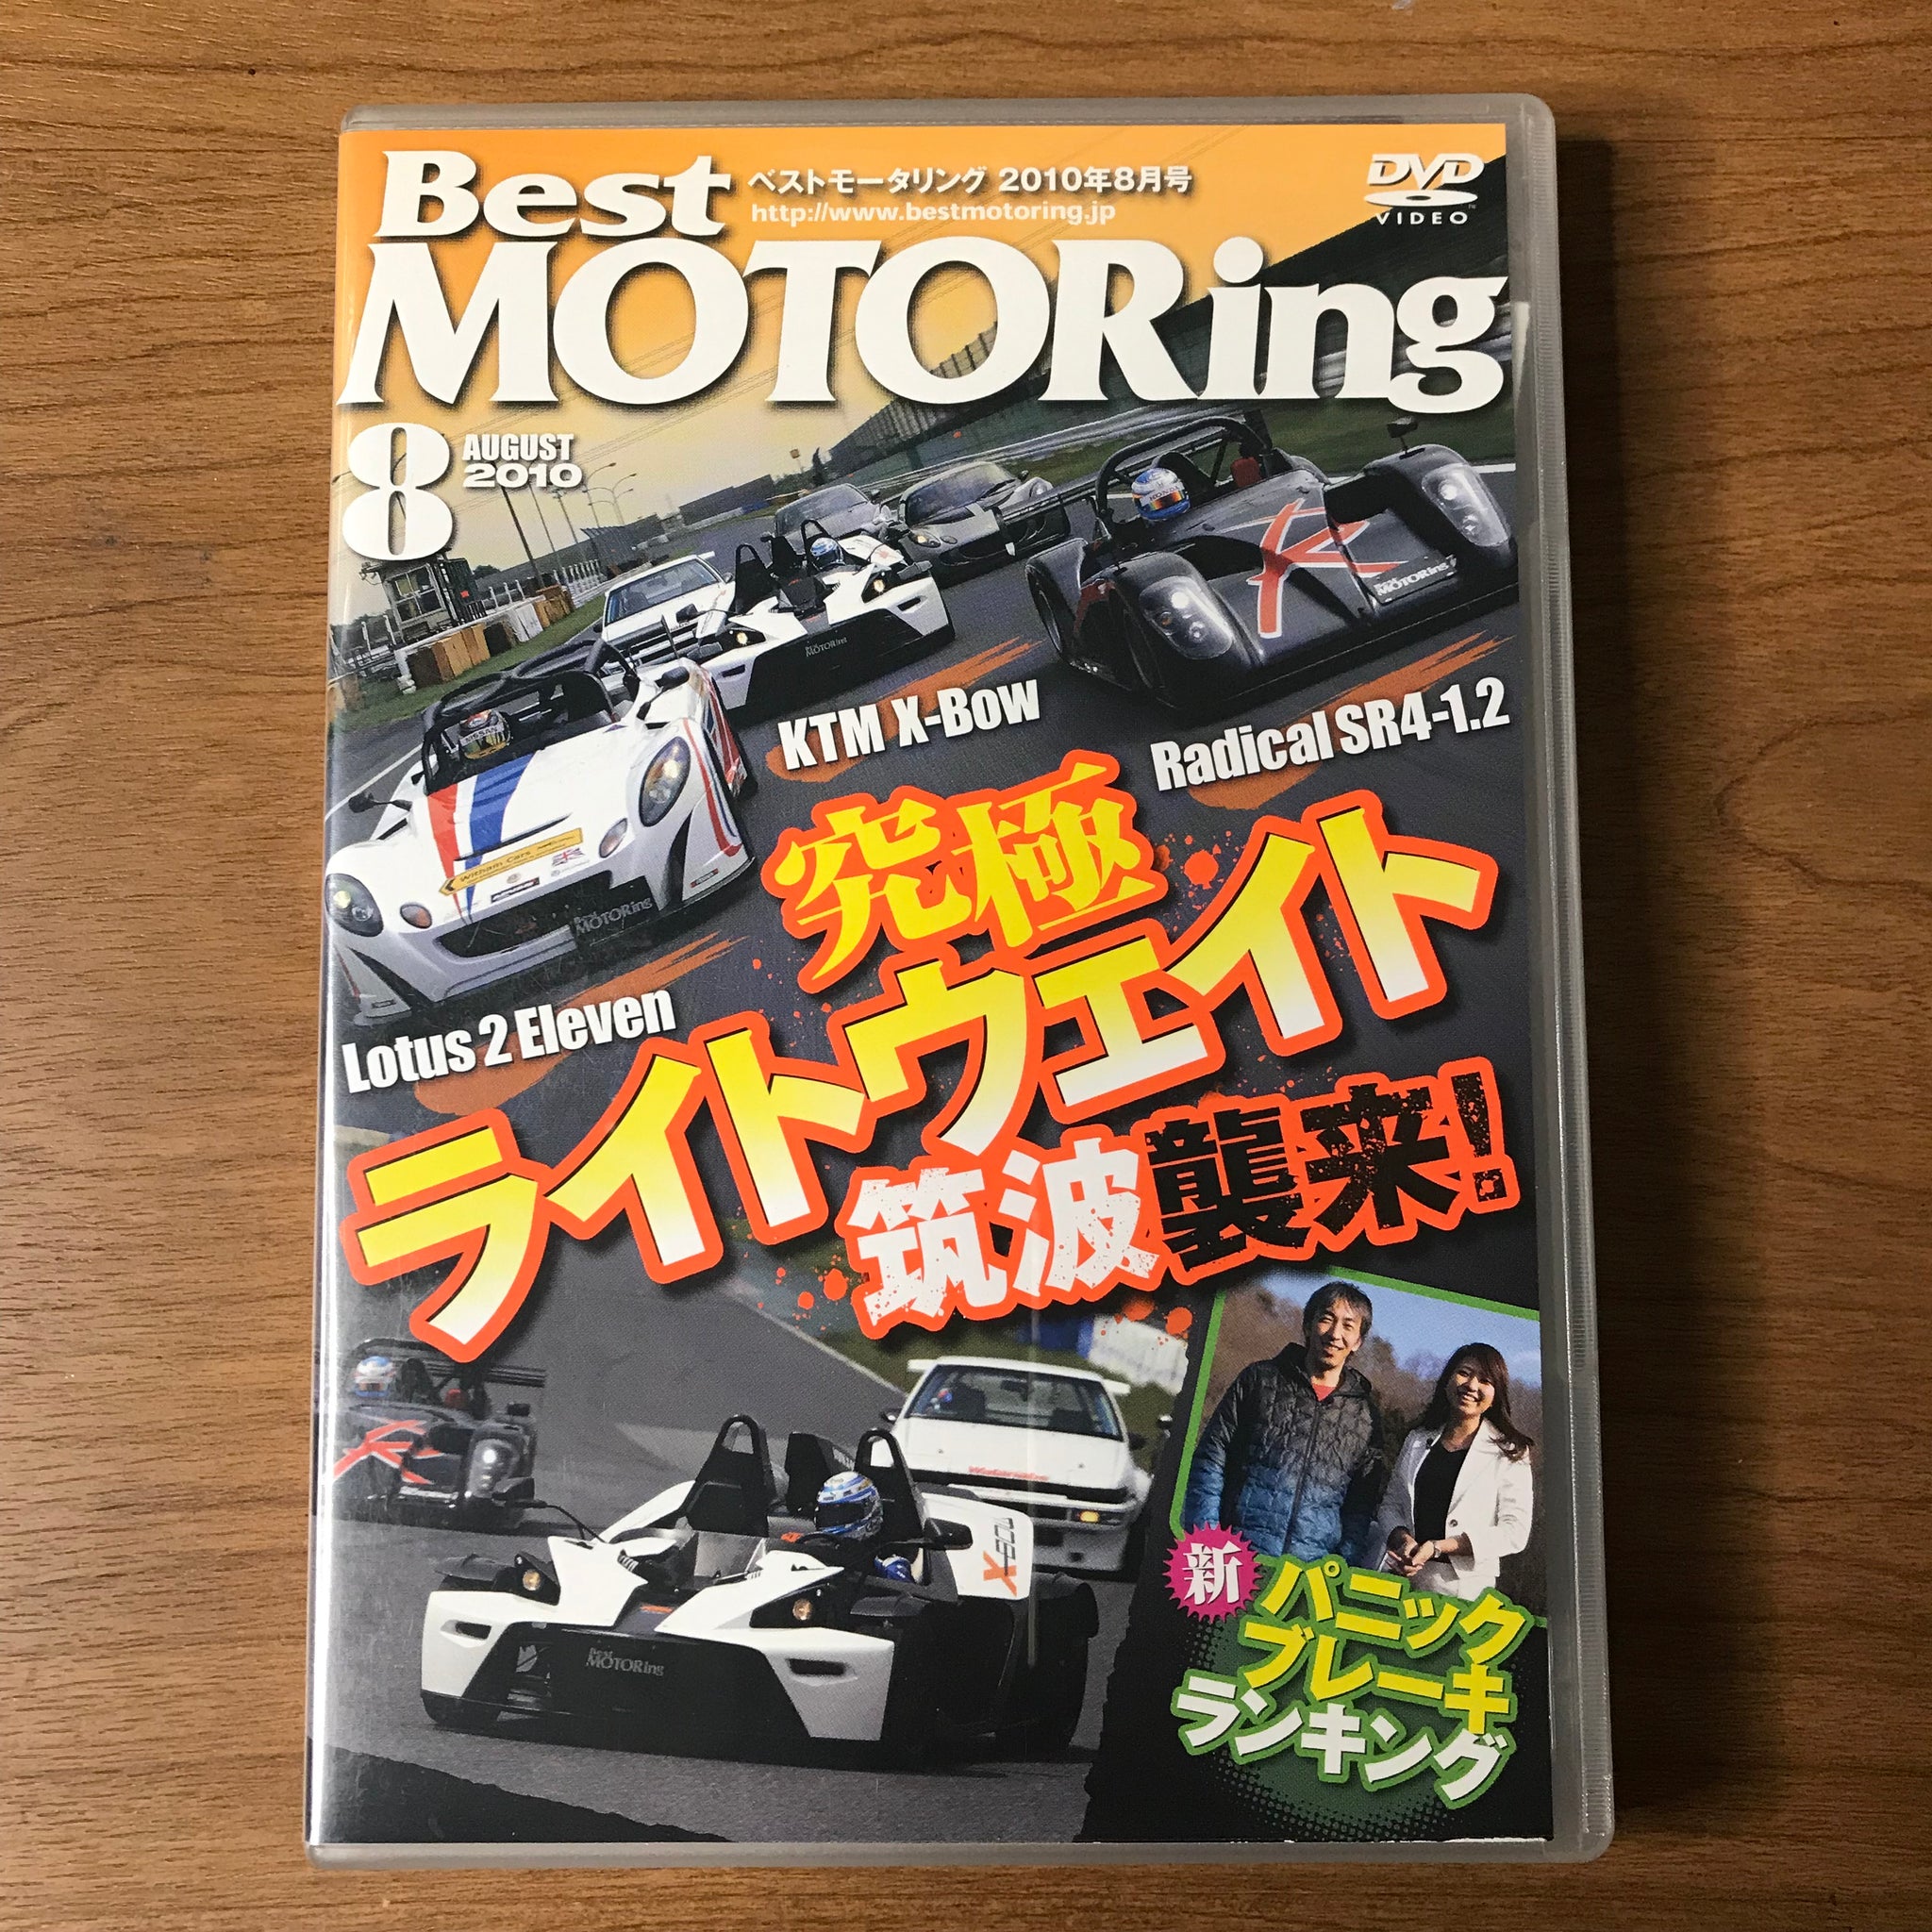 ベストモータリング 44本 Best MOTORing - DVD/ブルーレイ